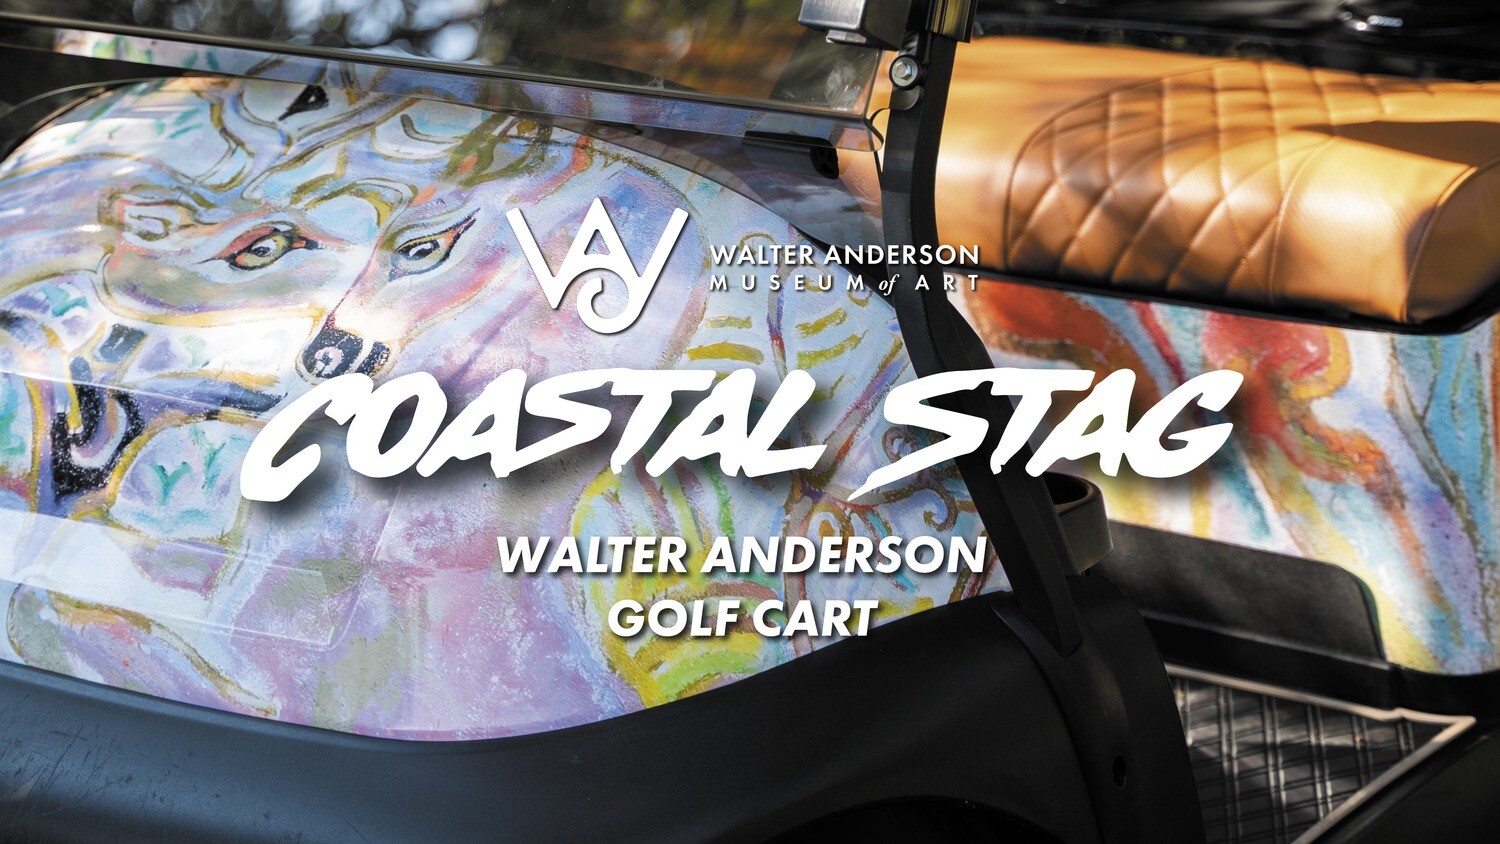 RAFFLE | "Coastal Stag" Edition Golf Cart